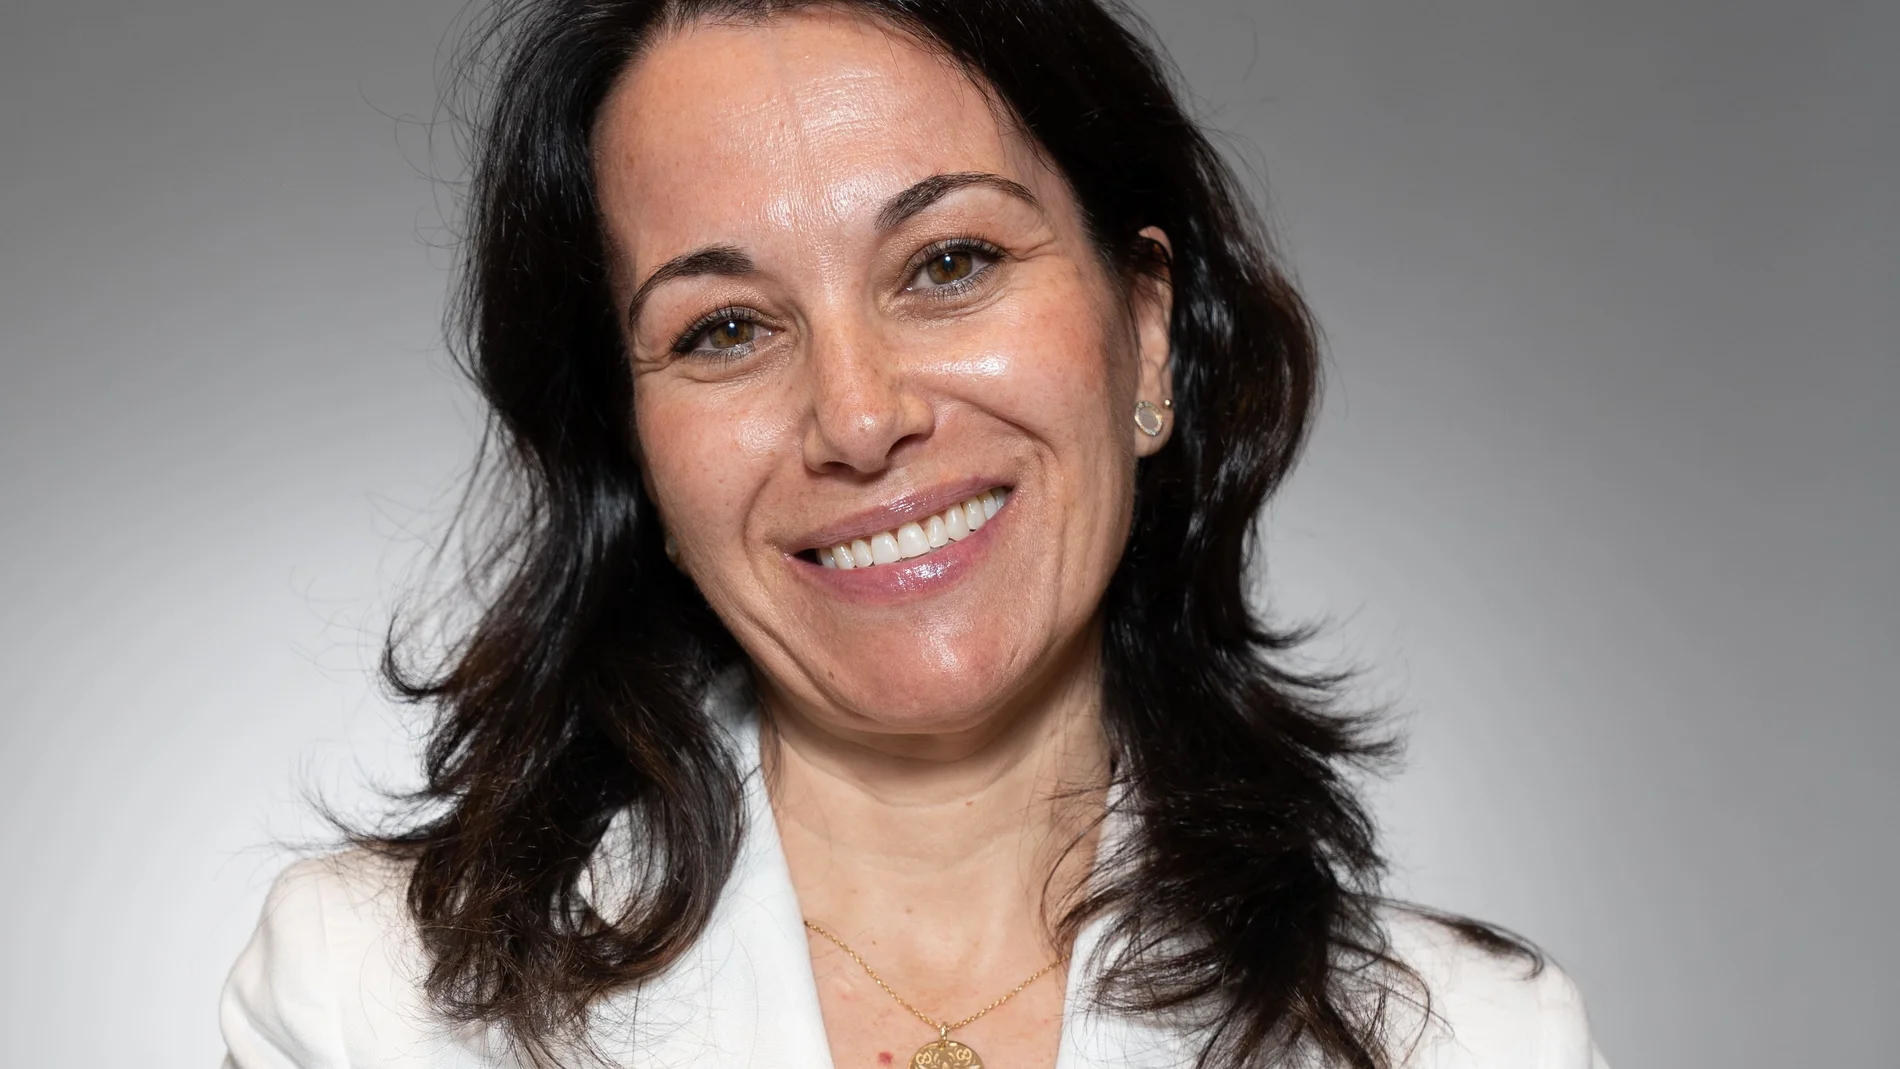 Cristina Valles, directora general y directora de recursos humanos NEORIS